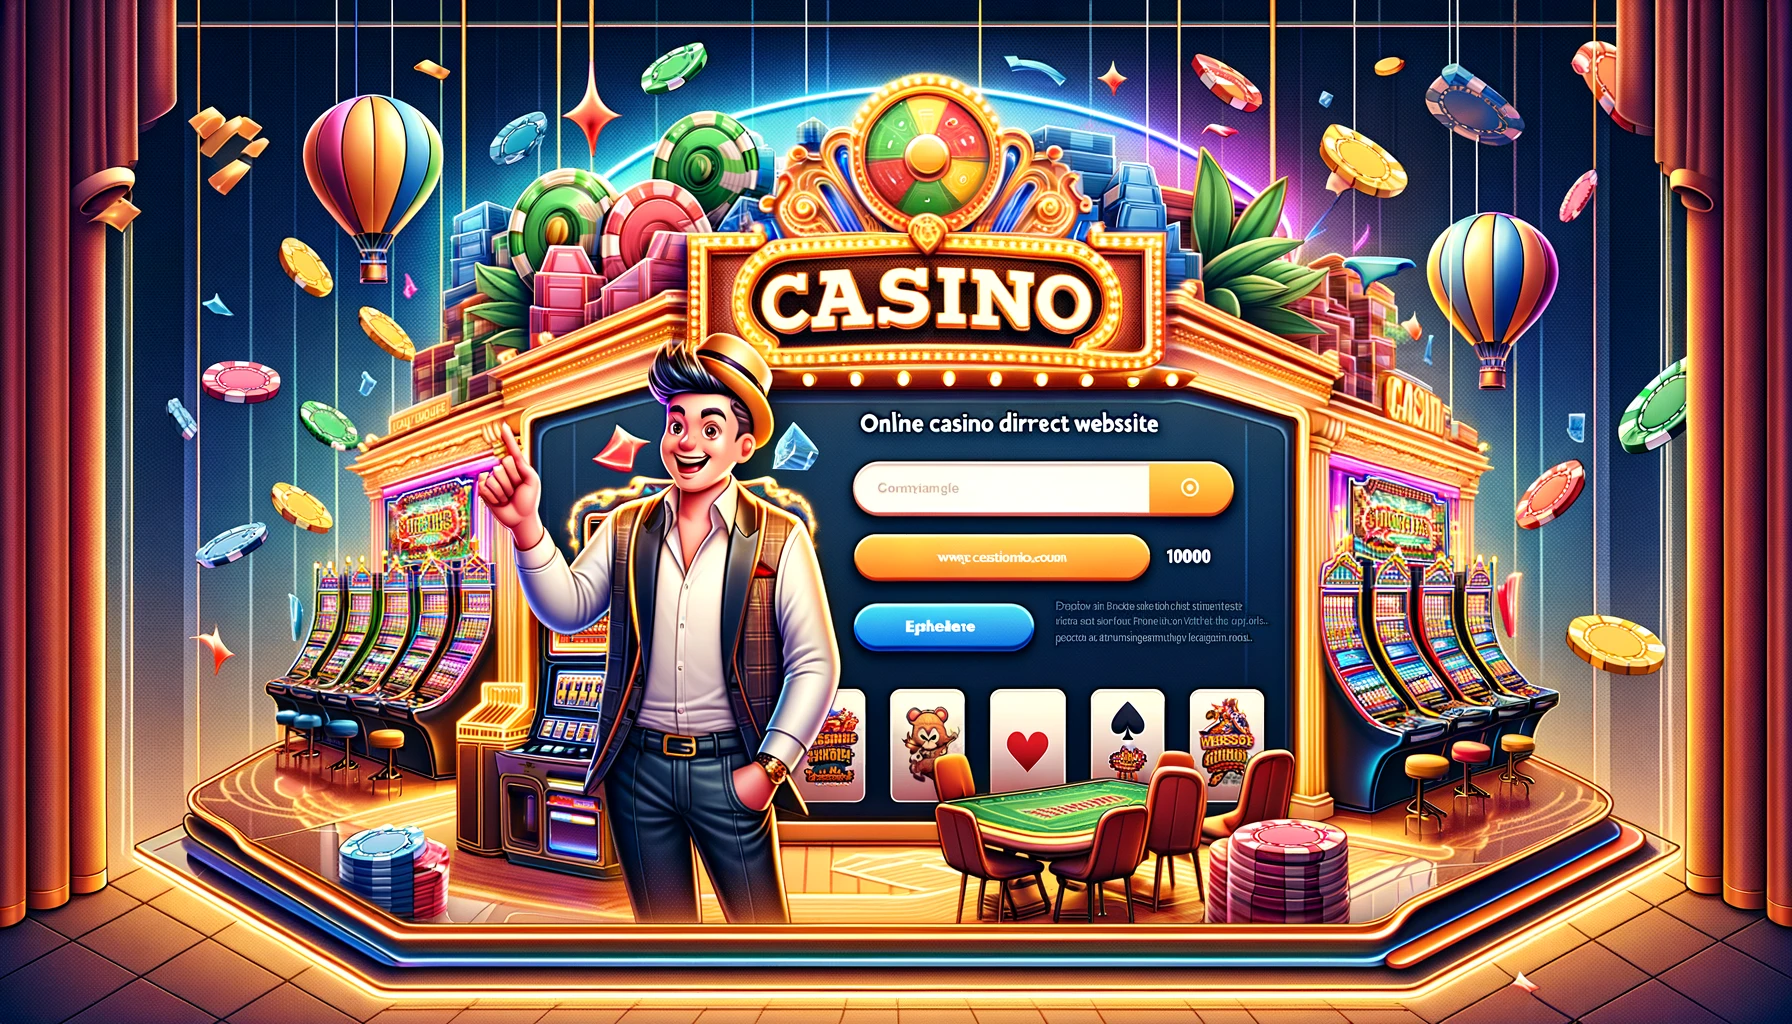 Online casino direct website